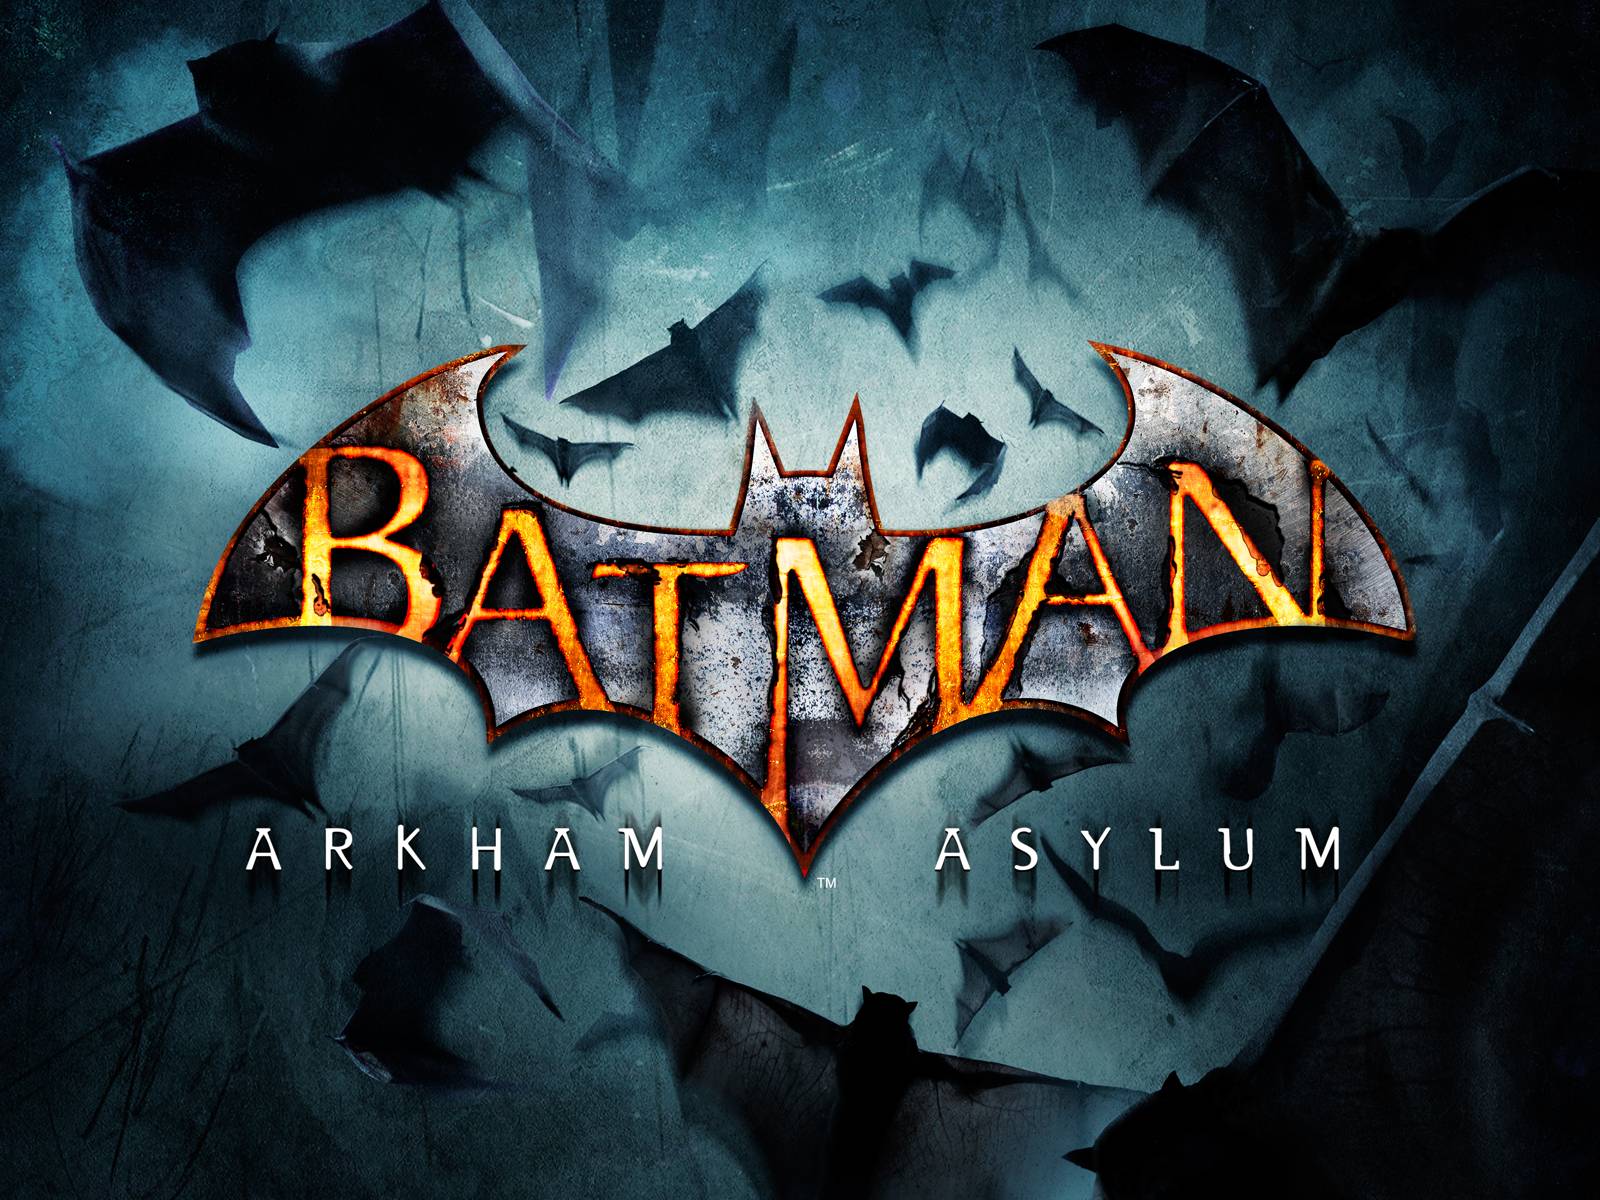 Fond ecran, wallpaper Batman, Arkham Asylum